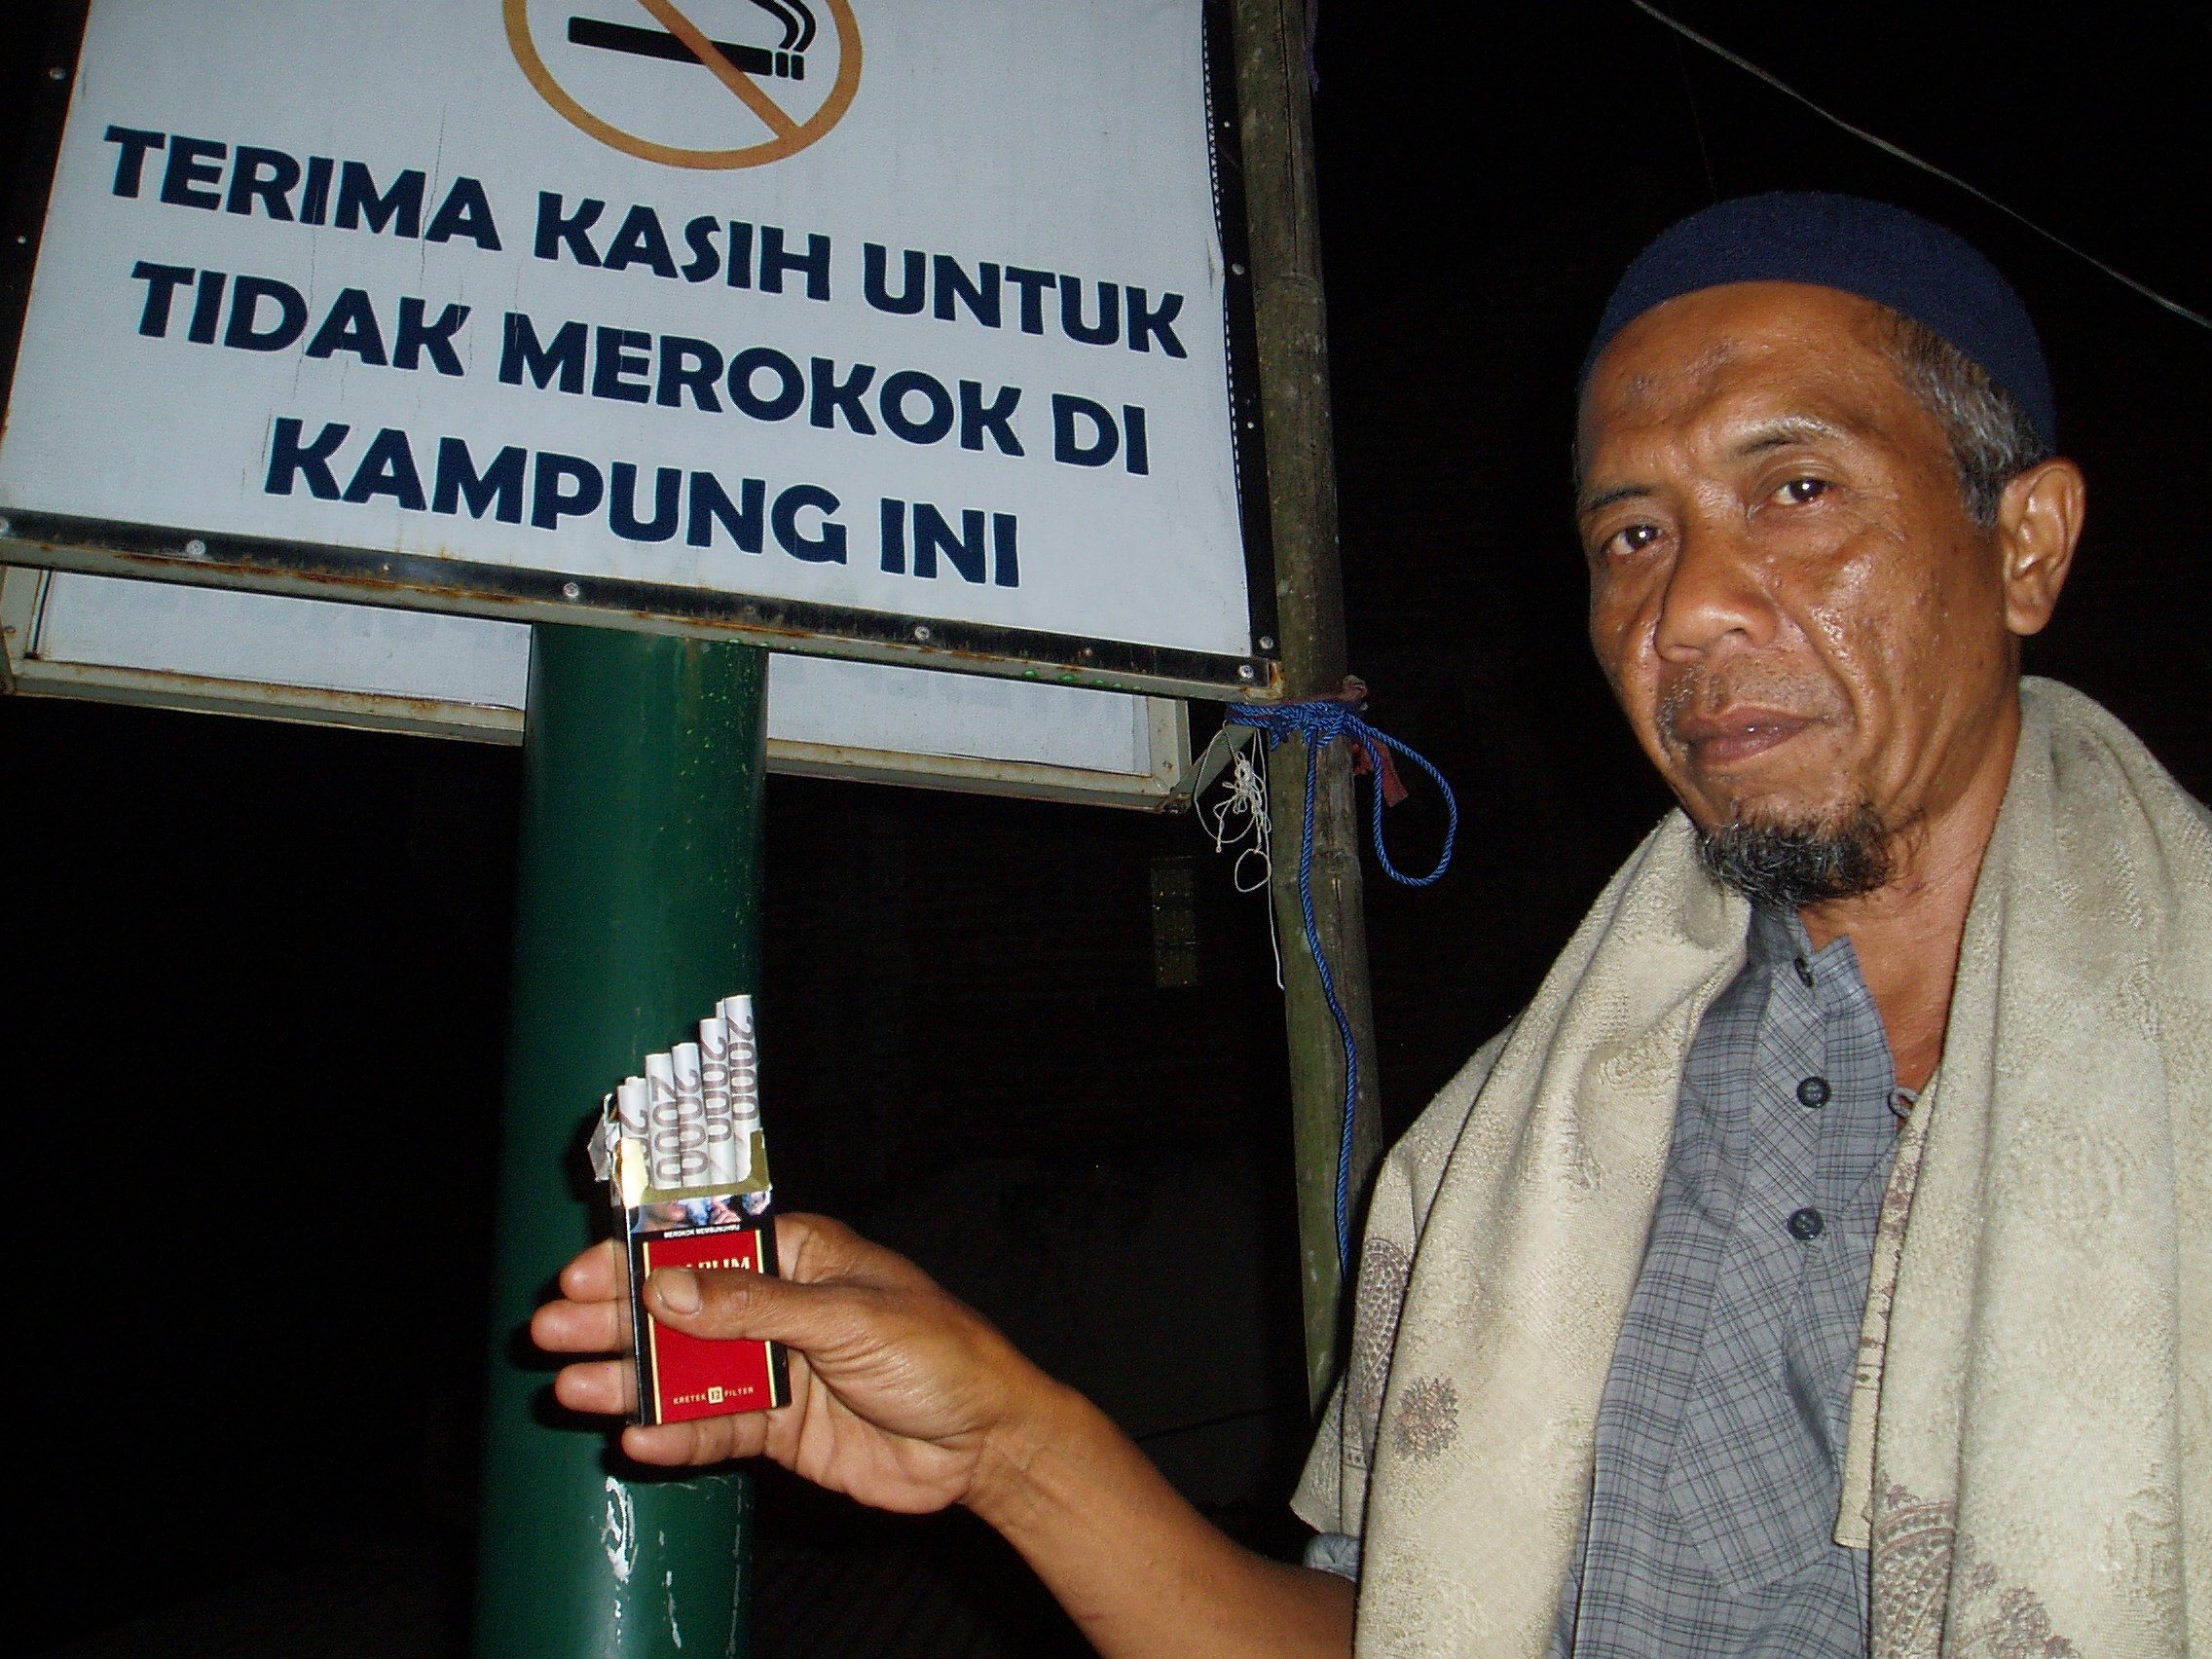 Yang merokok dan berpakaian minim dilarang masuk kampung ini